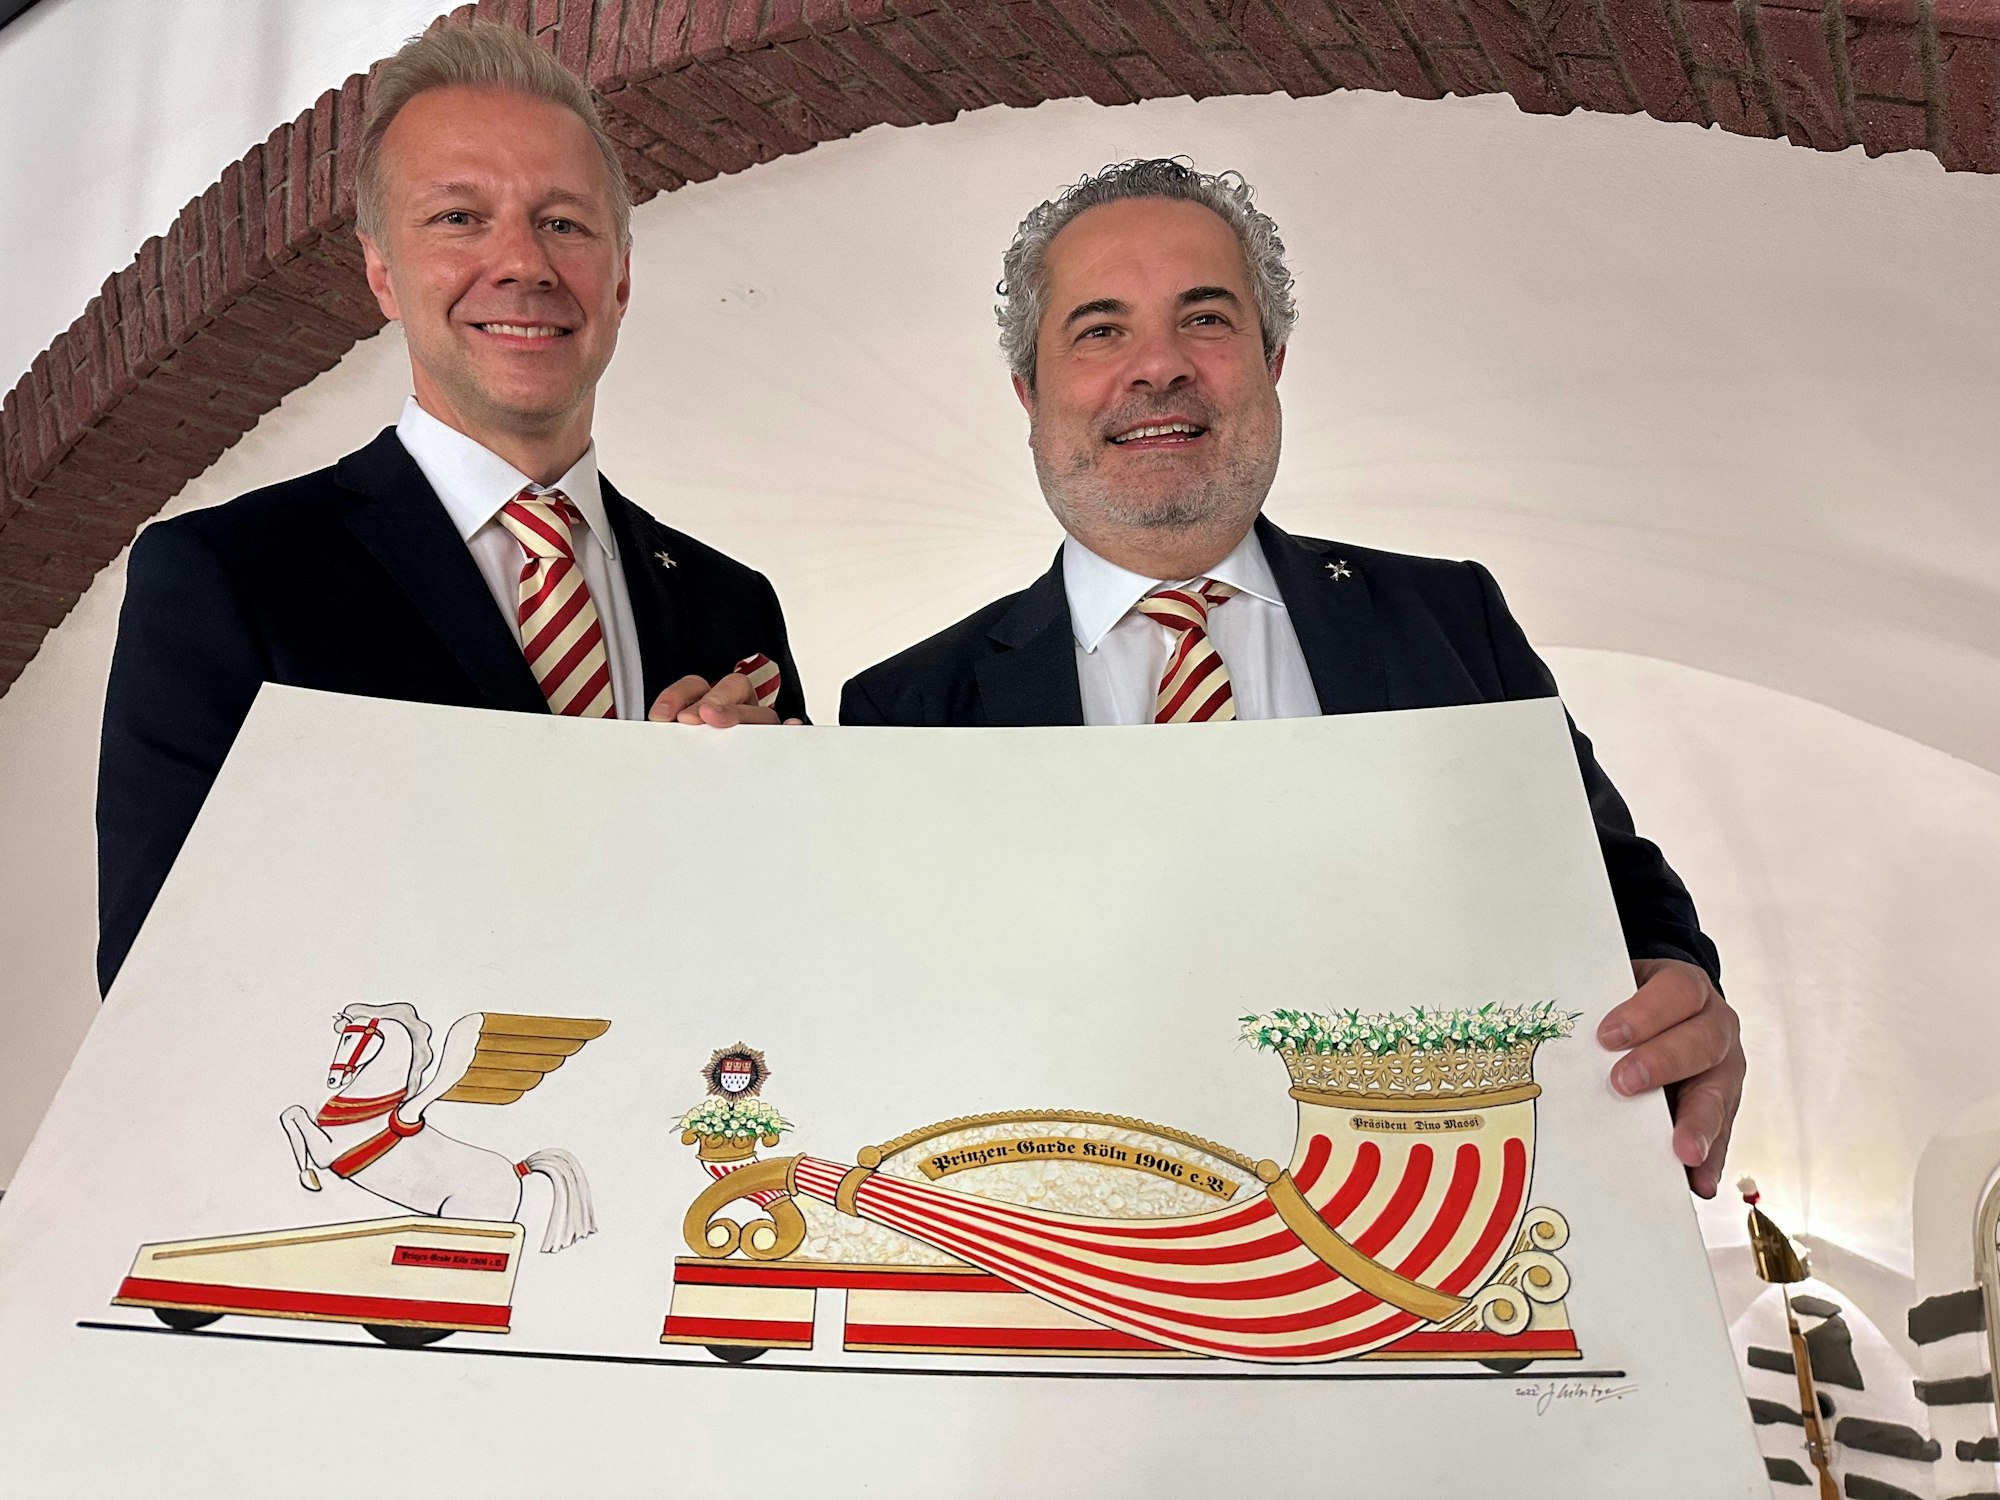 Marcus Gottschalk und Dino Massi zeigen einen Entwurf für den neuen Präsidentenwagen der Prinzen-Garde für den Rosenmontagszug 2023.